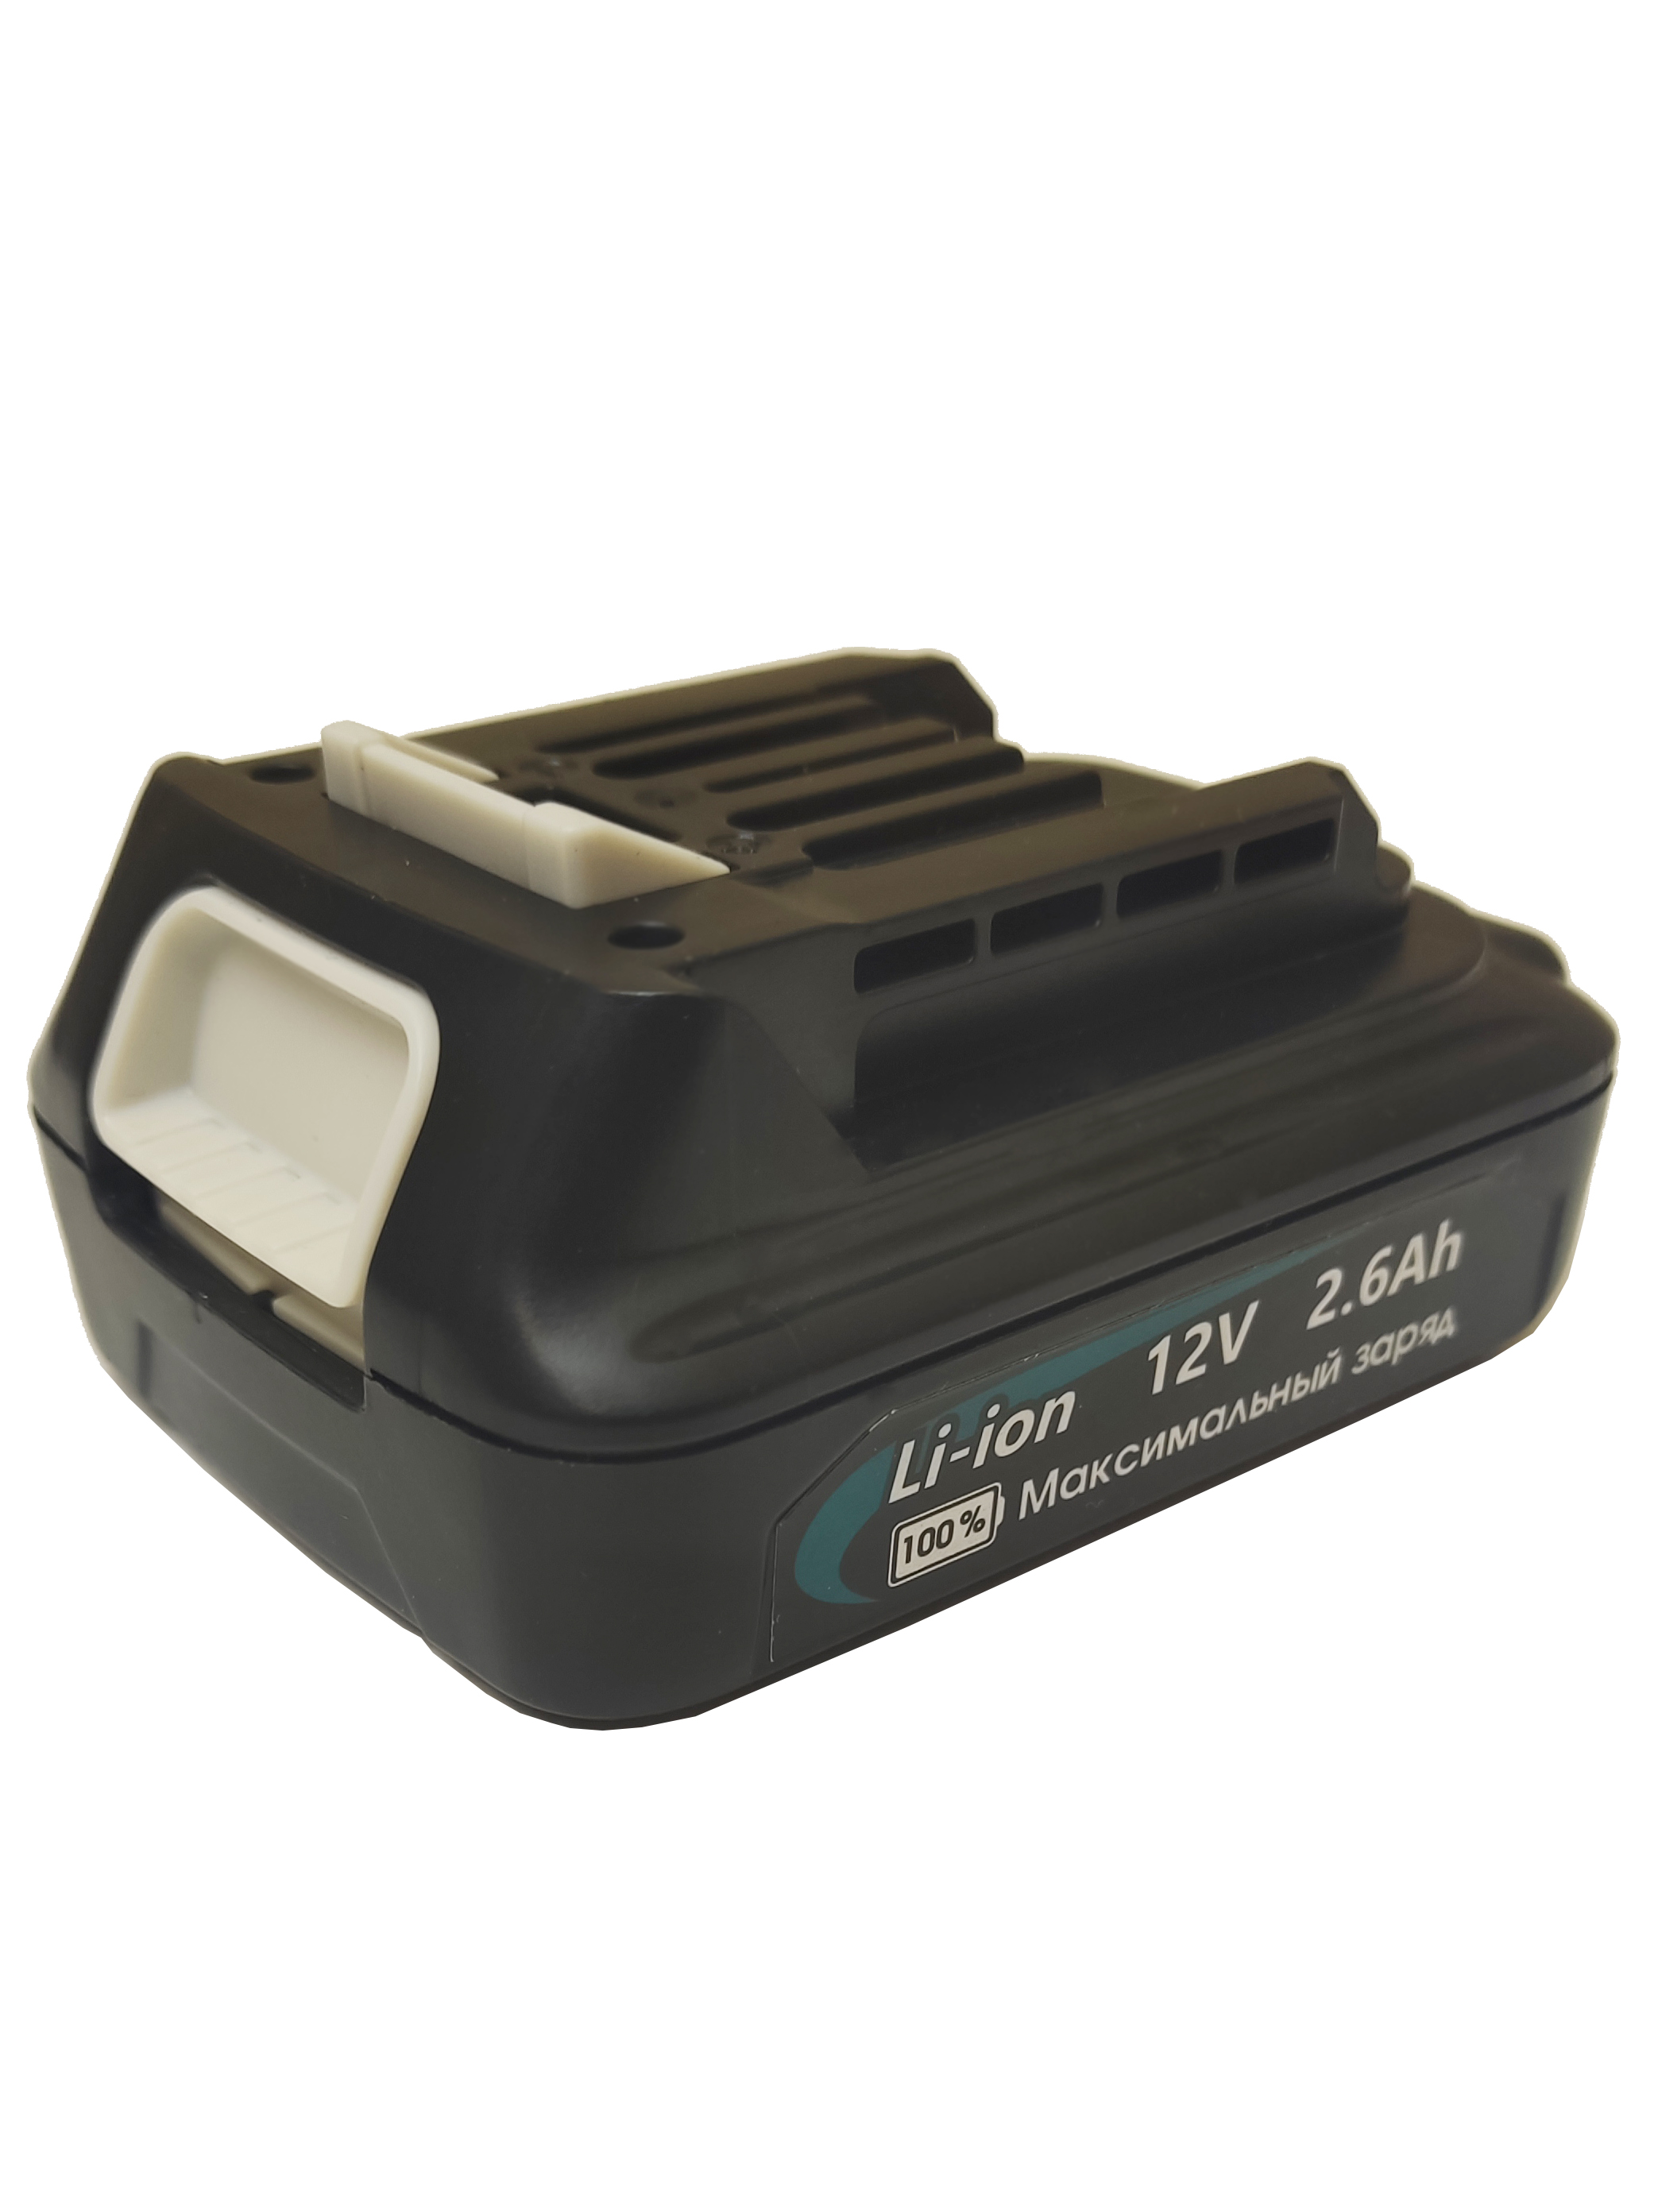 Аккумулятор для электроинструментов Makita BL1020B 12V 2.6Ah BL1015 BL1021B BL1041 BL1016 ножницы для травы skrab